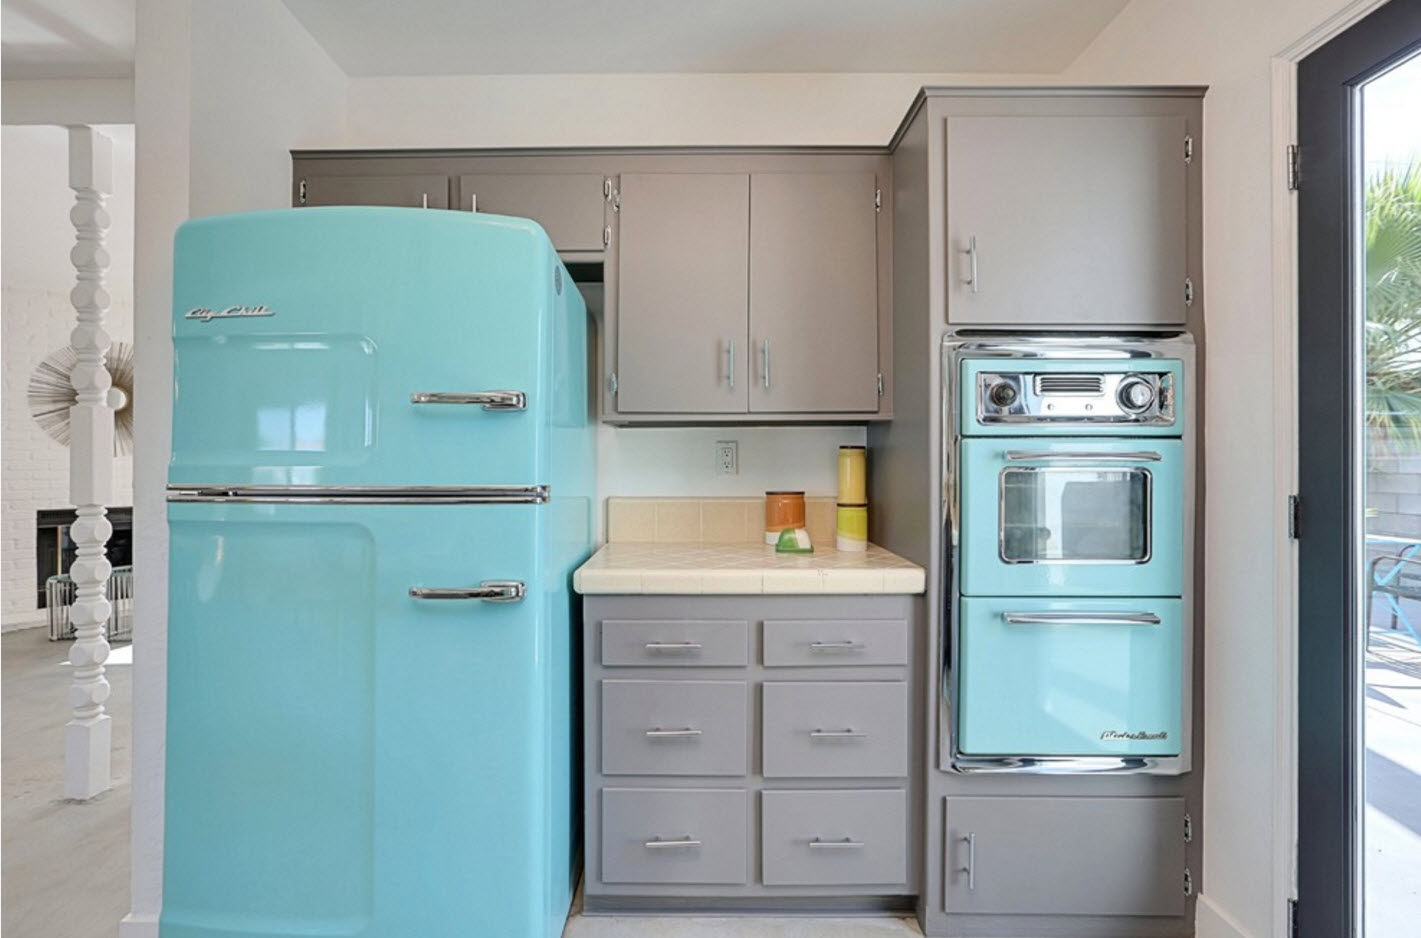 холодильник в цвет мебели